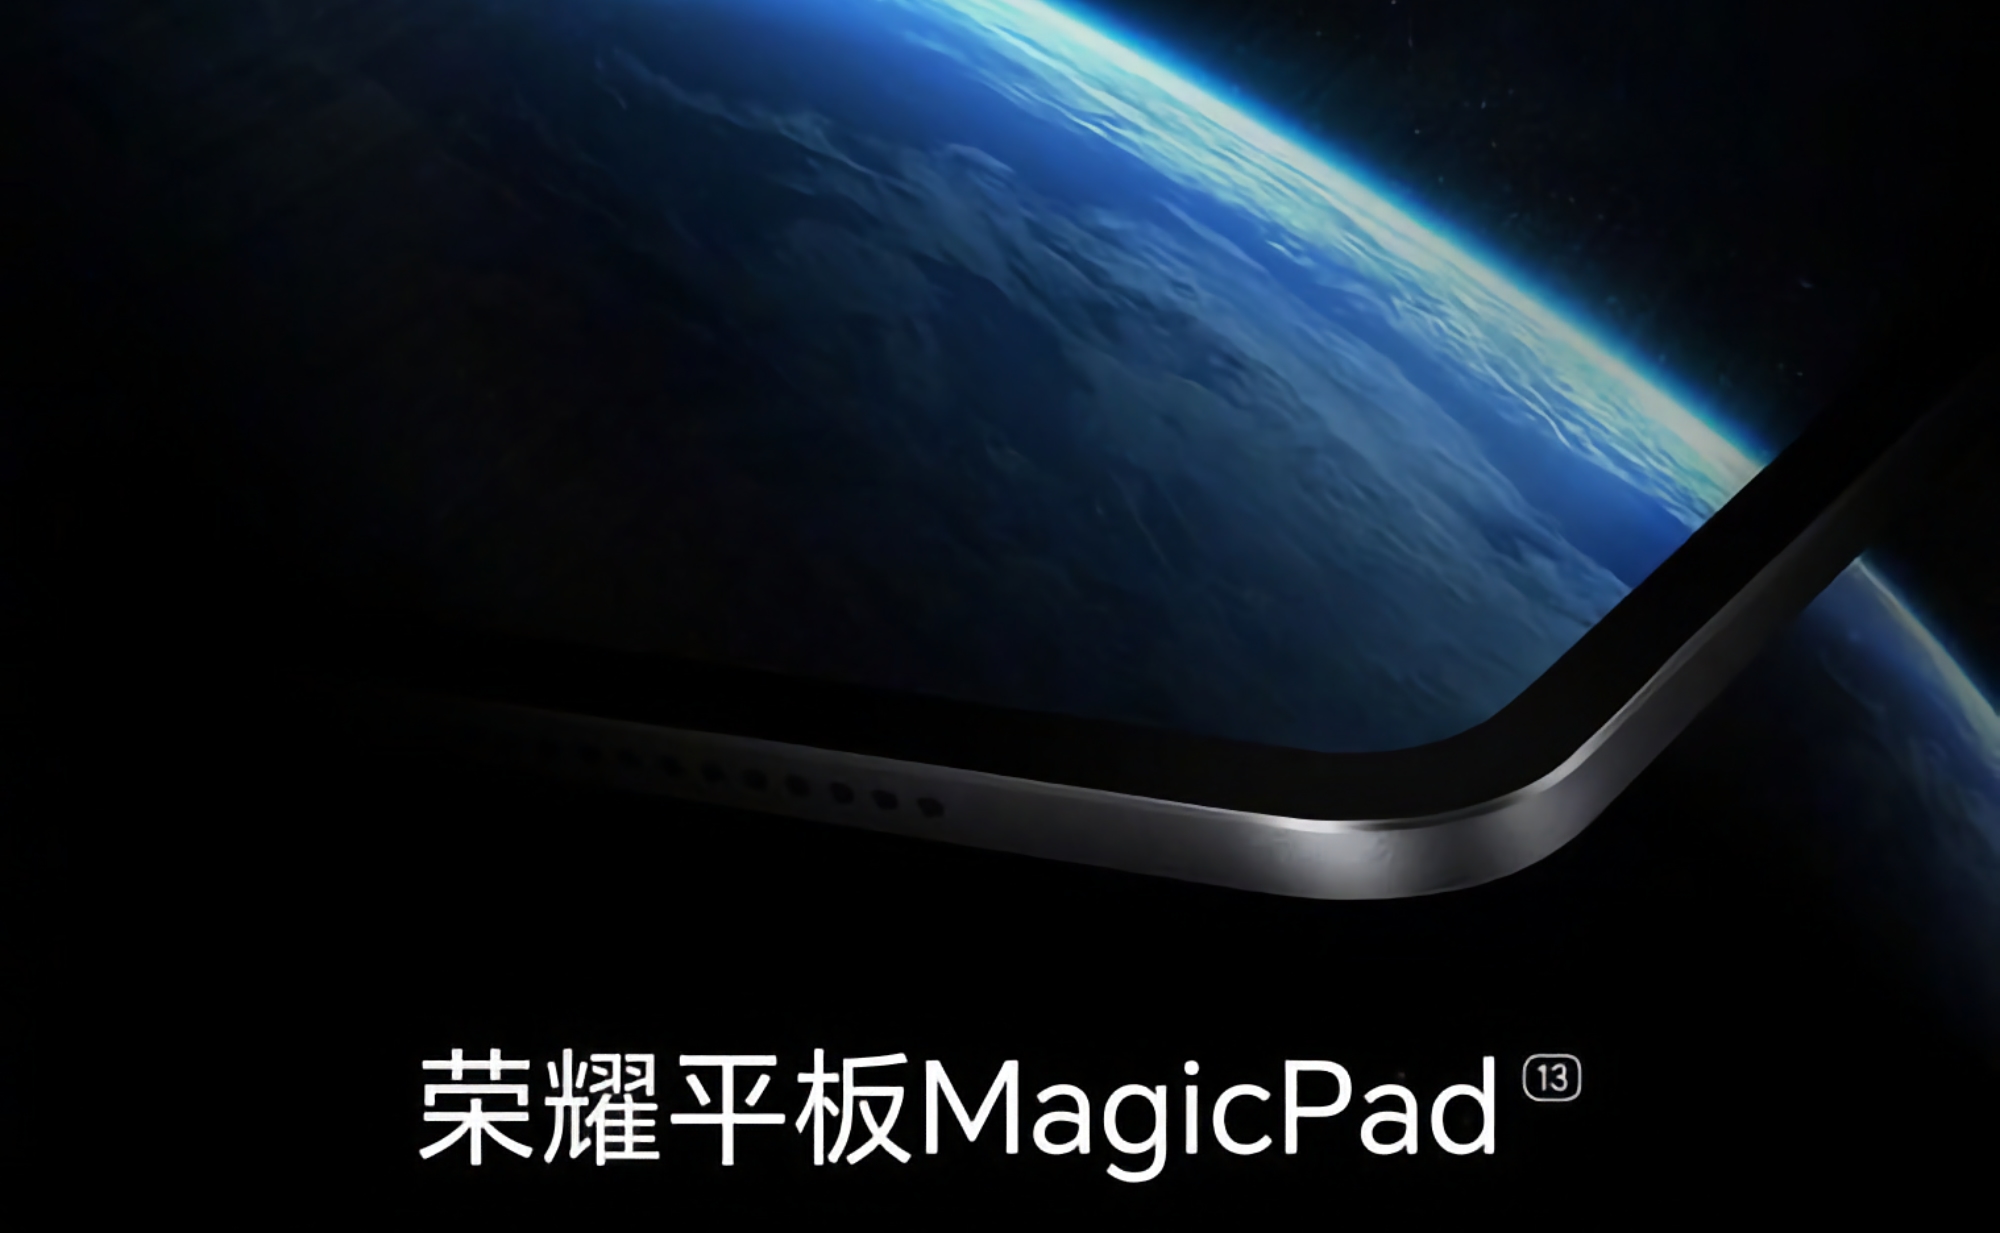 Ikke bare den sammenleggbare Magic V2-smarttelefonen: Honor lanserer også nettbrettet MagicPad 13 den 12. juli.